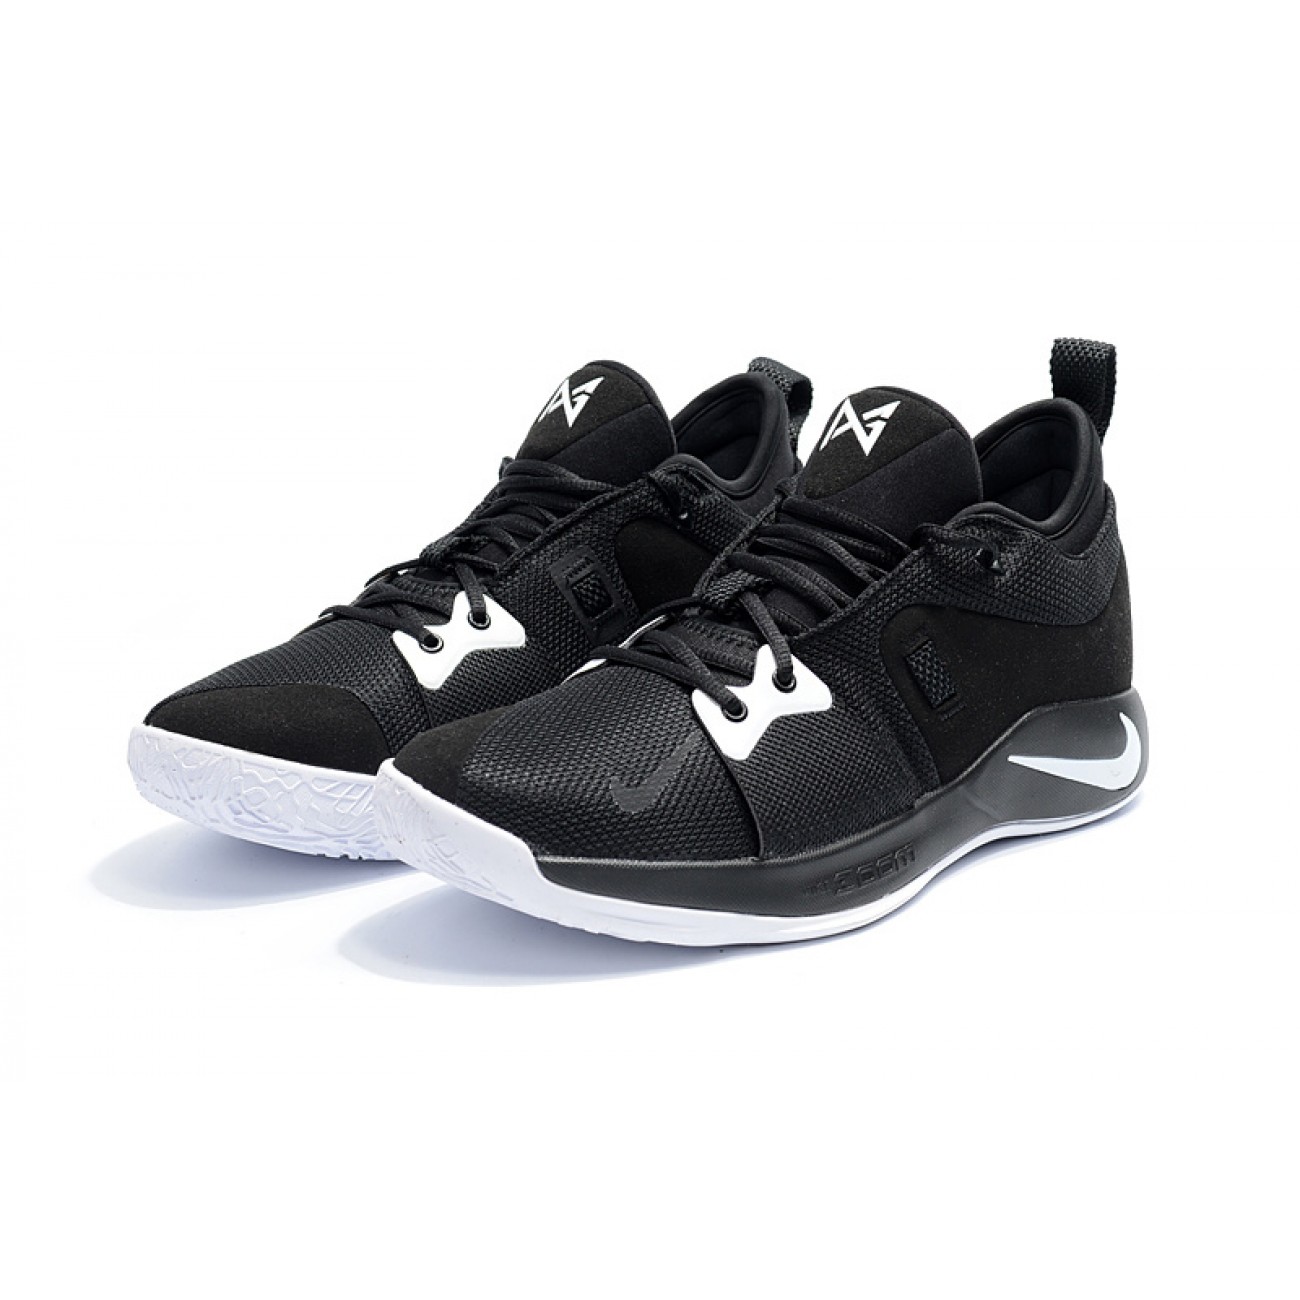 Nike PG 2 Black/White